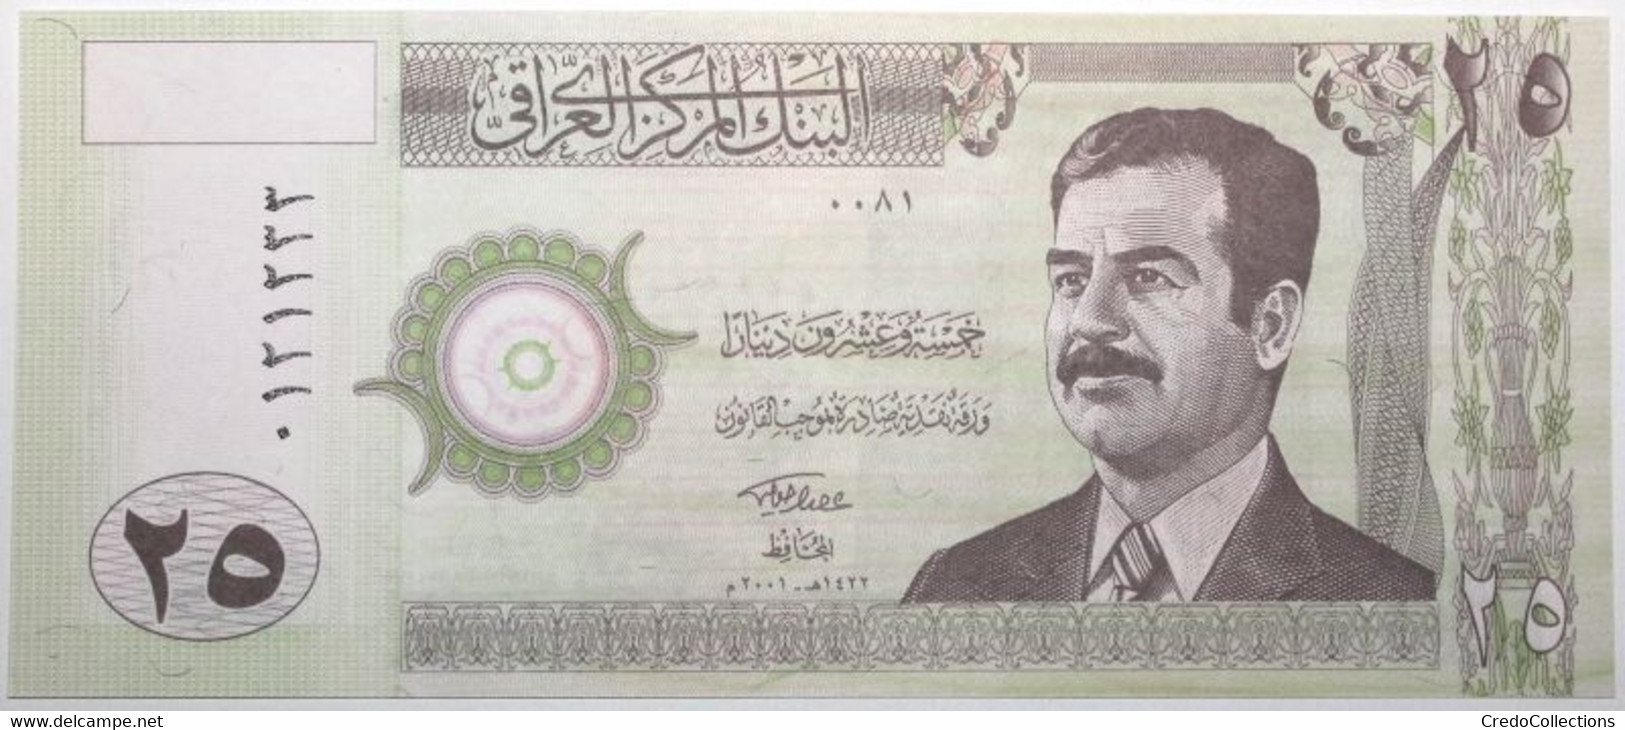 Iraq - 25 Dinars - 2001 - PICK 86a.2 - NEUF - Iraq